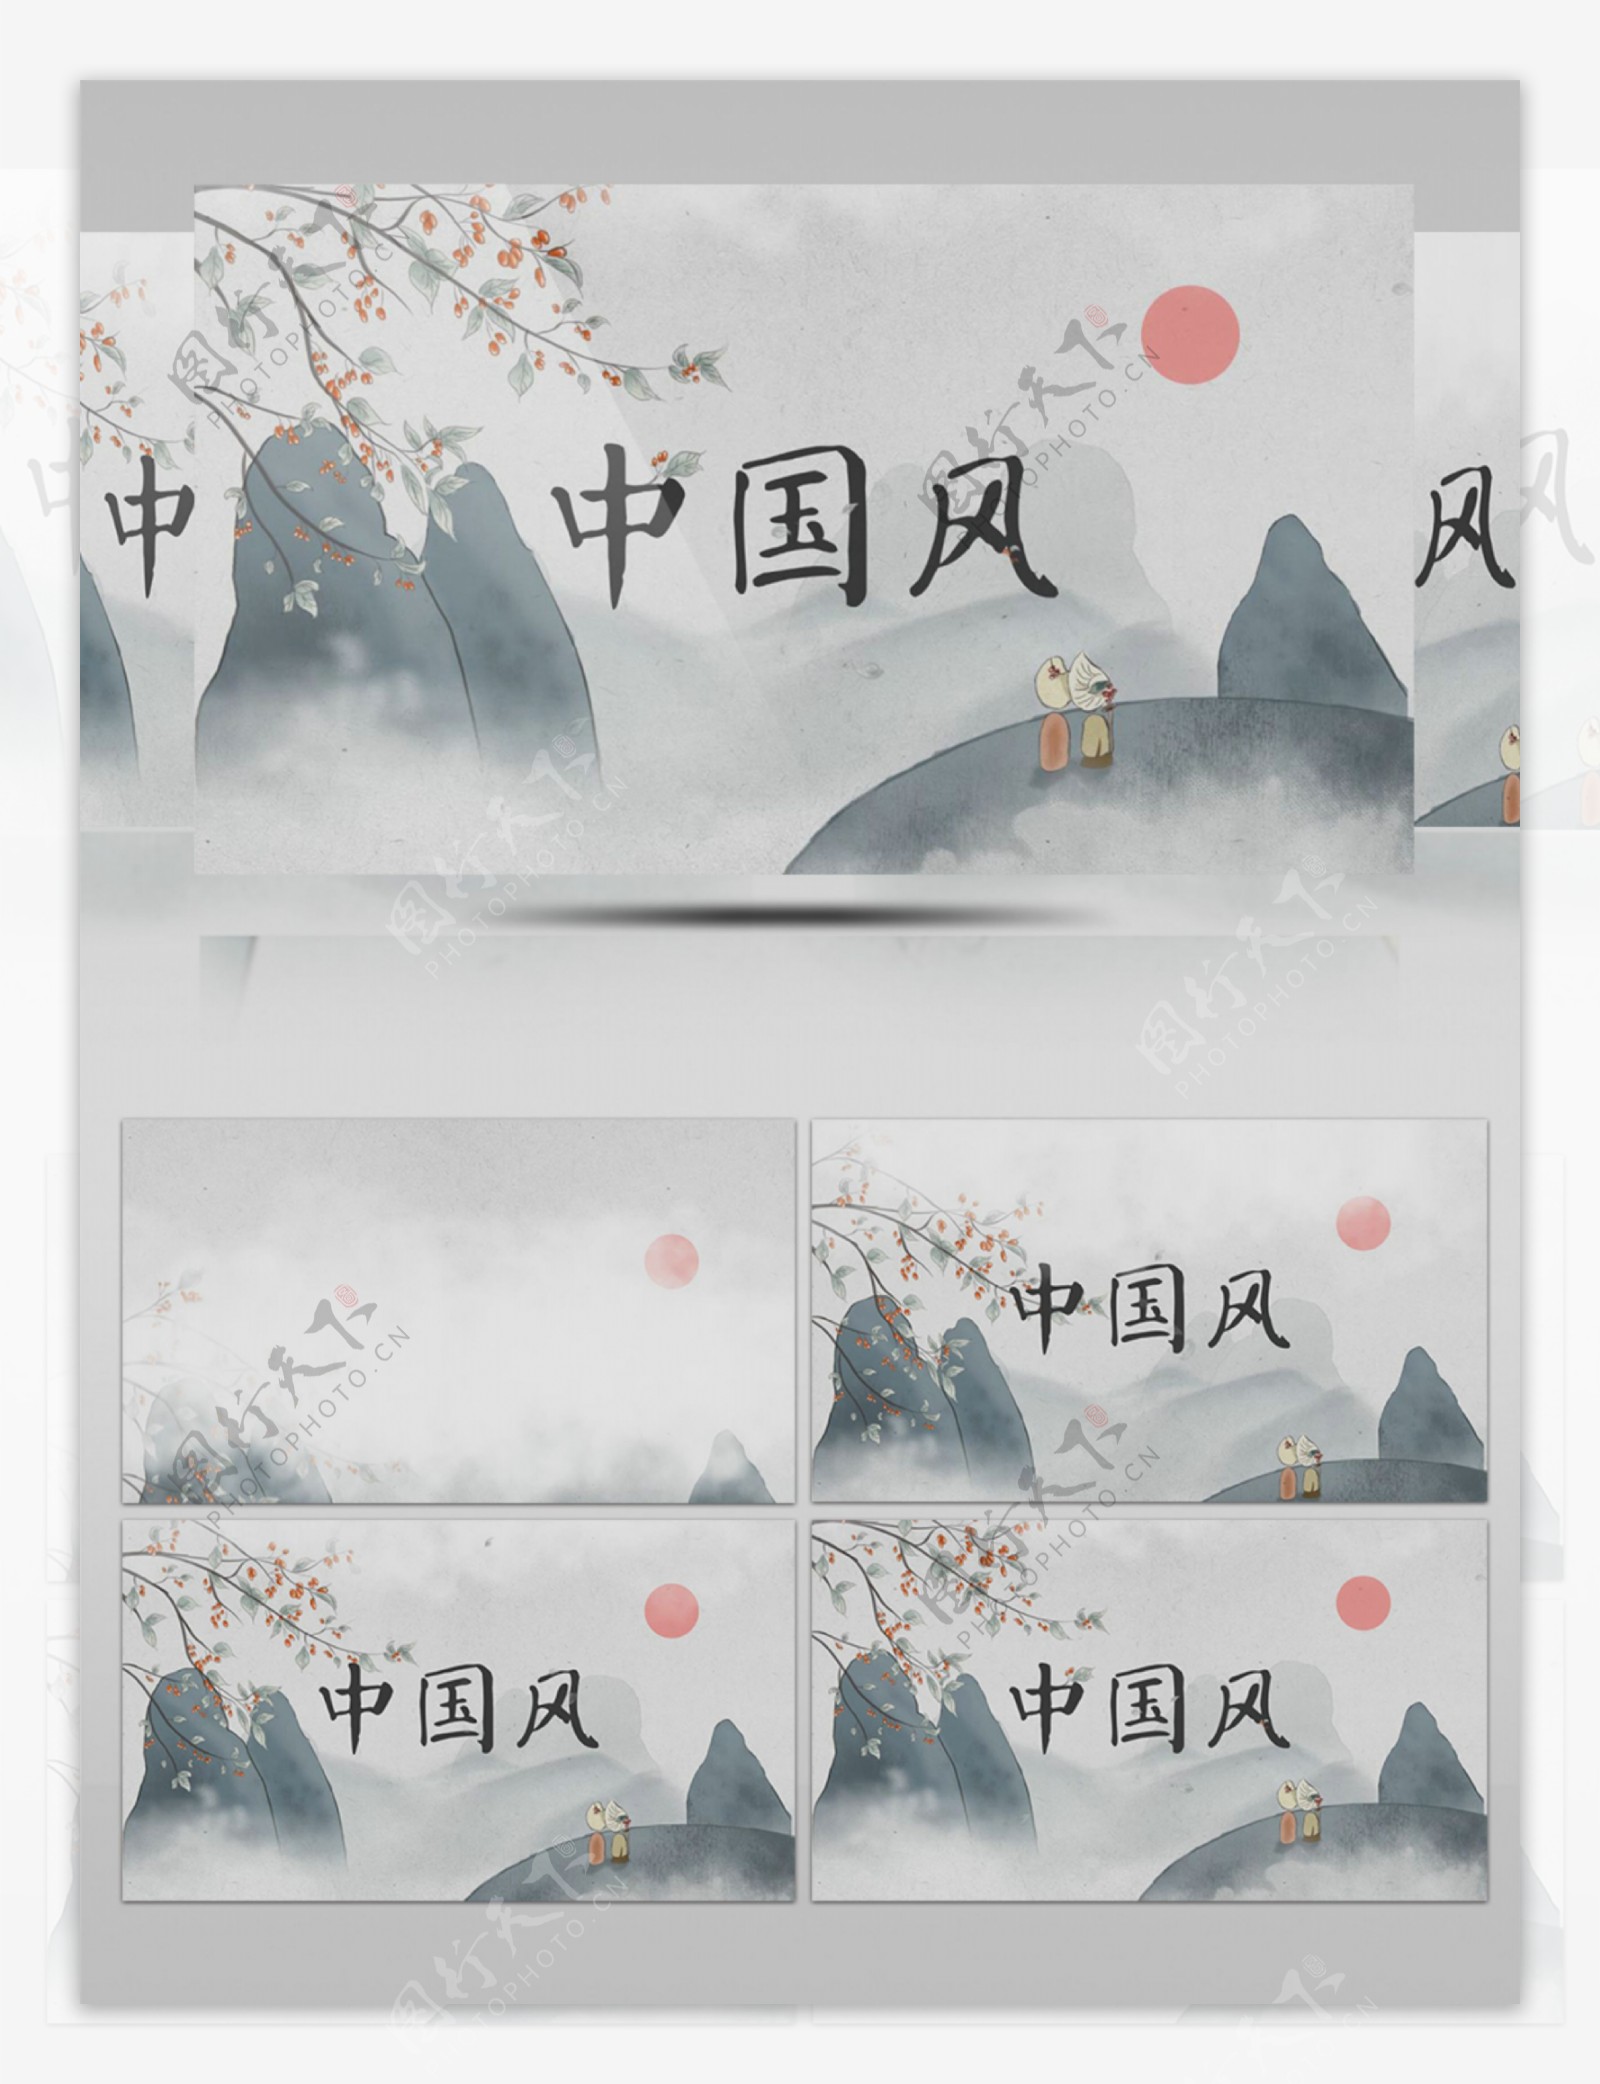 中国风国画工笔画片头AE模板